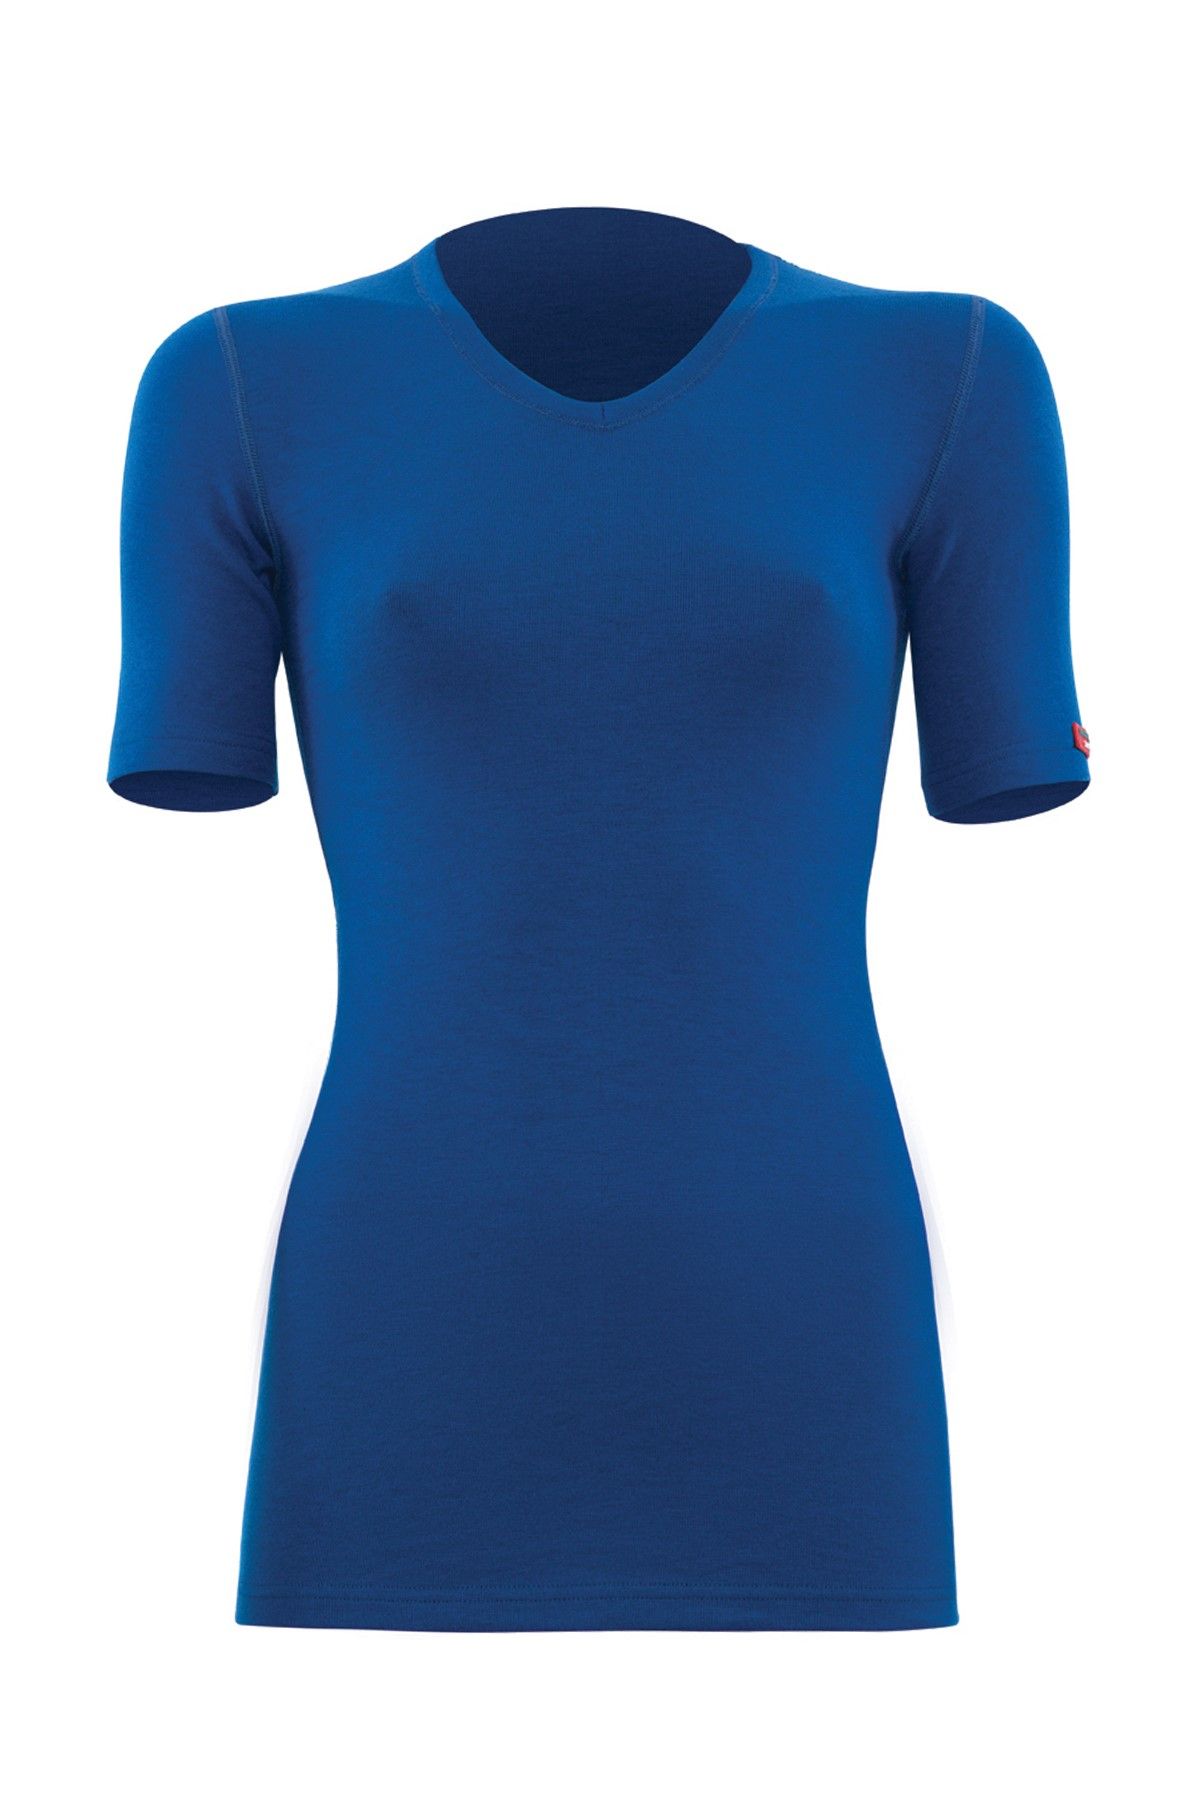 Blackspade Unisex Termal 2. Seviye T-Shirt 1263 - Mavi